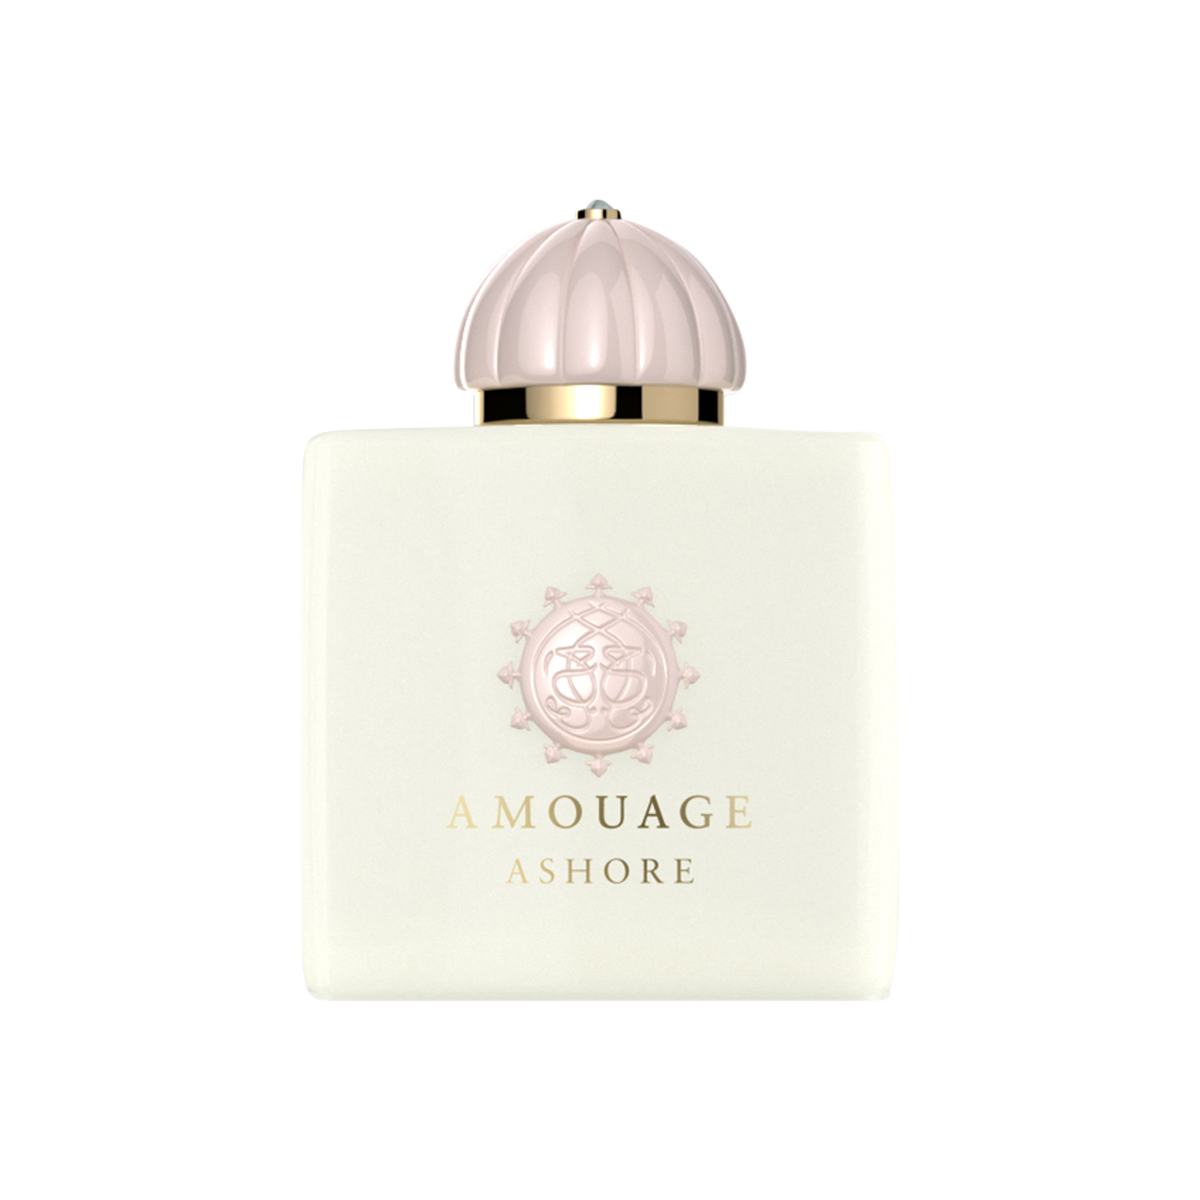 Amouage - Ashore Woman Eau de Parfum